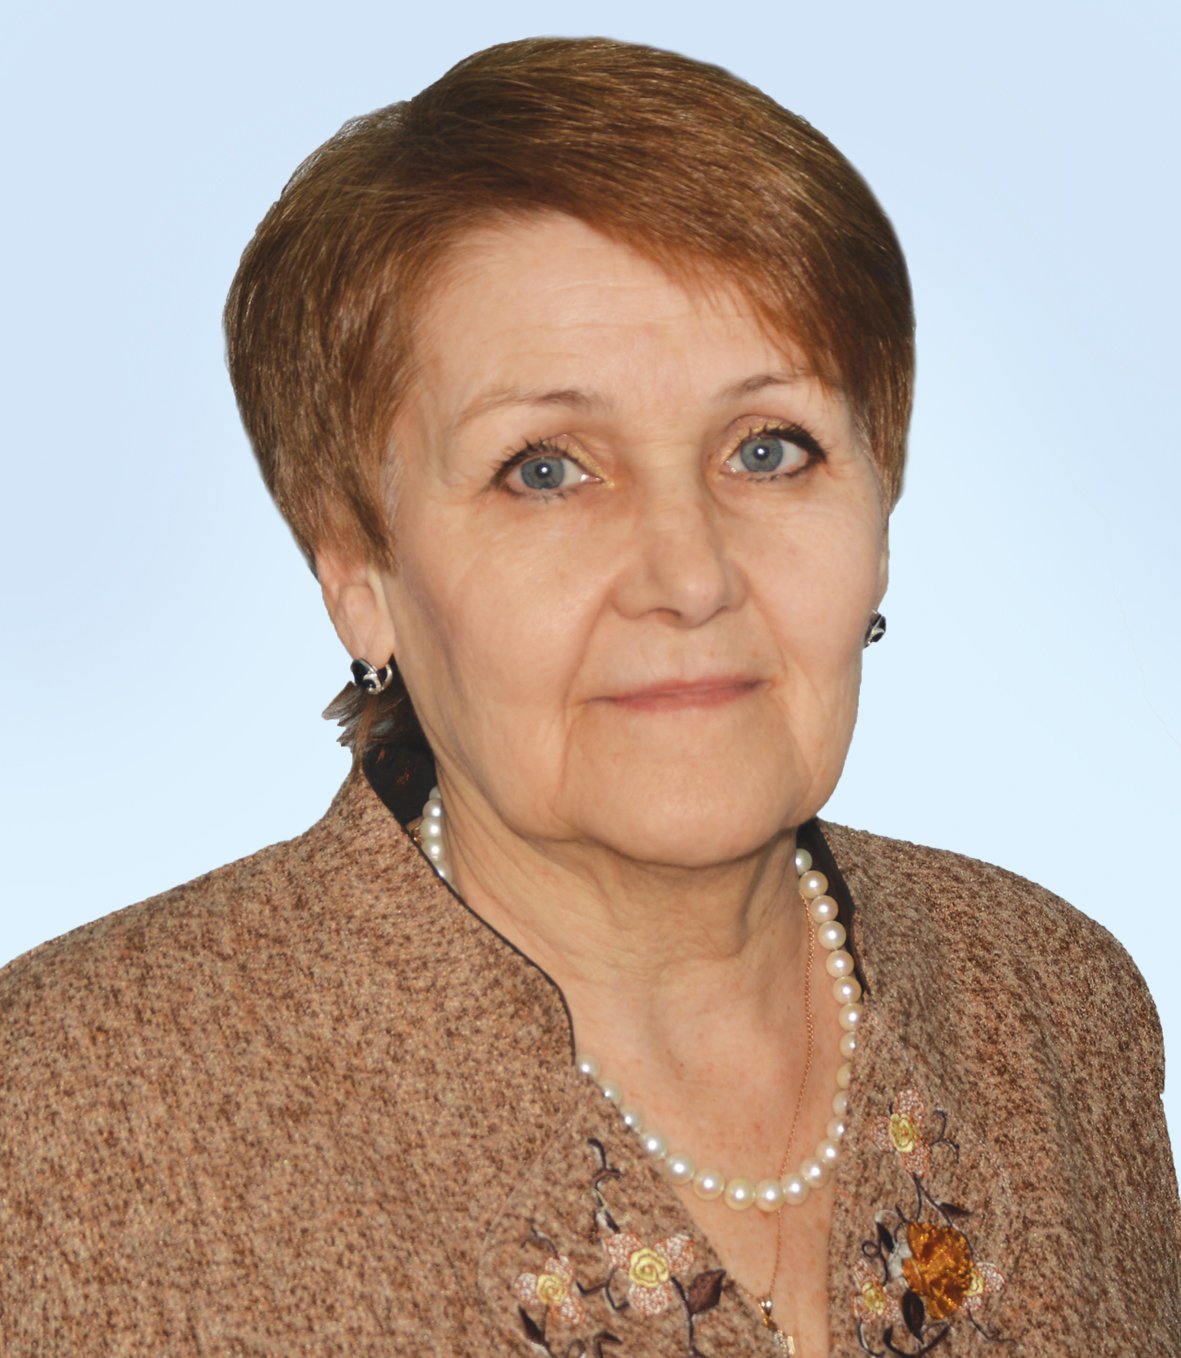 Шукурова Татьяна Олеговна